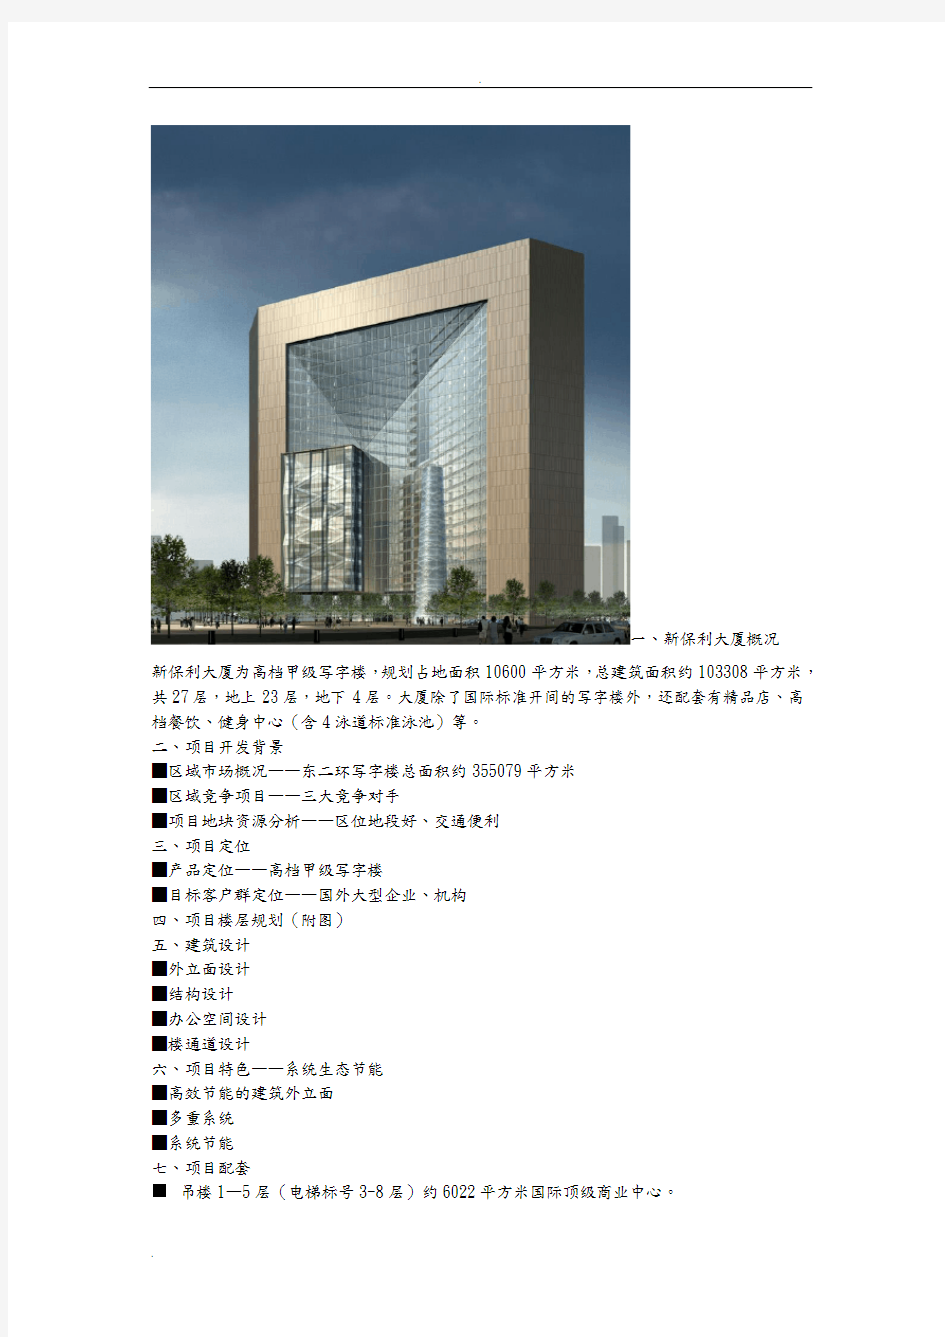 北京保利大厦案例分析